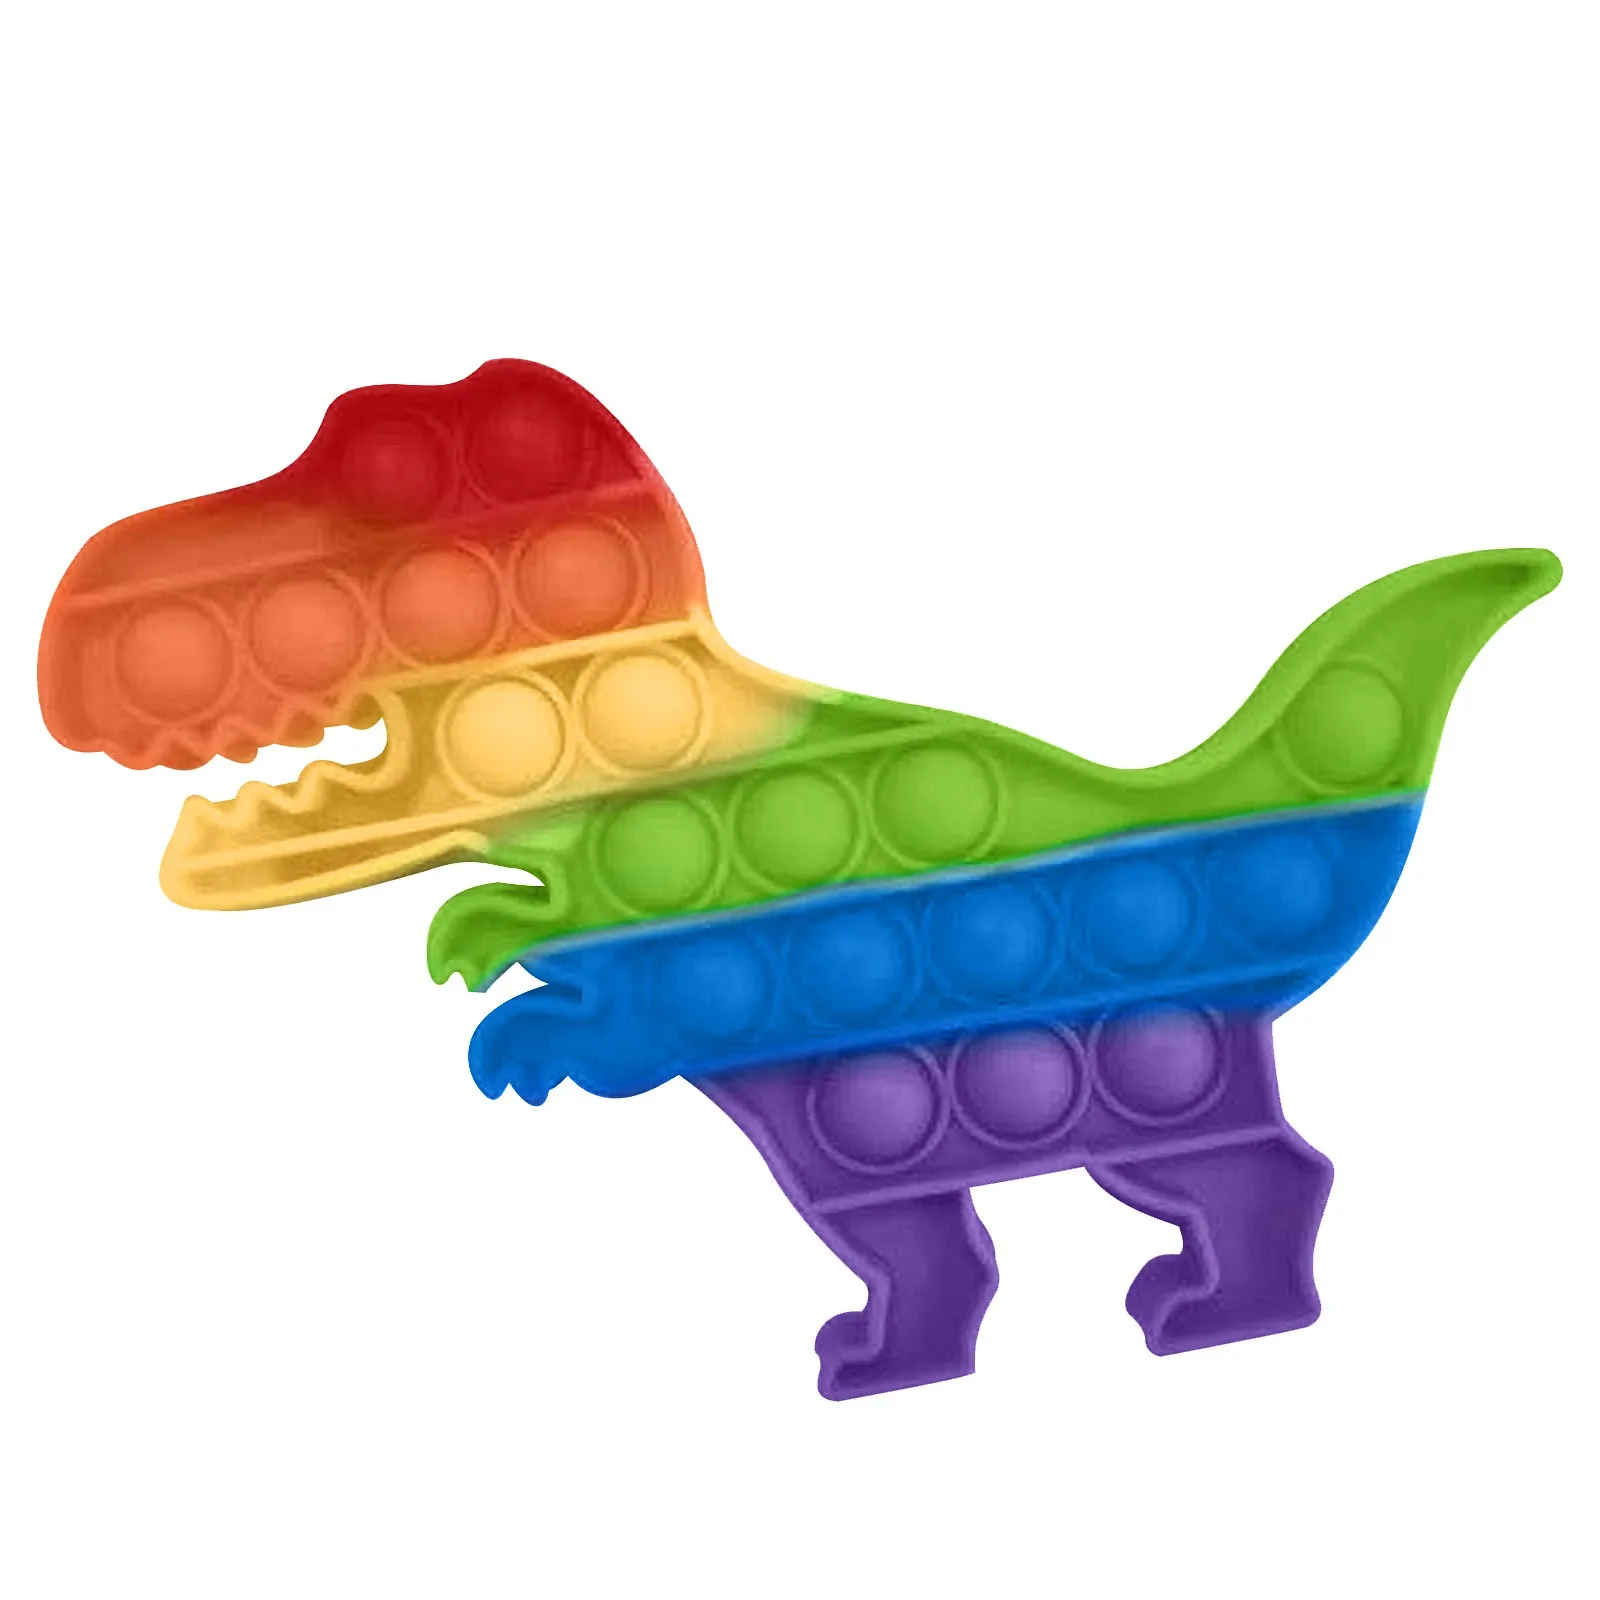 Empurre-a Bolha Fidget Stress Brinquedos de Adultos, Crianças Dinossauro Fidget Sensorial Brinquedo Autismo Necessidades Especiais Apaziguador do Stress